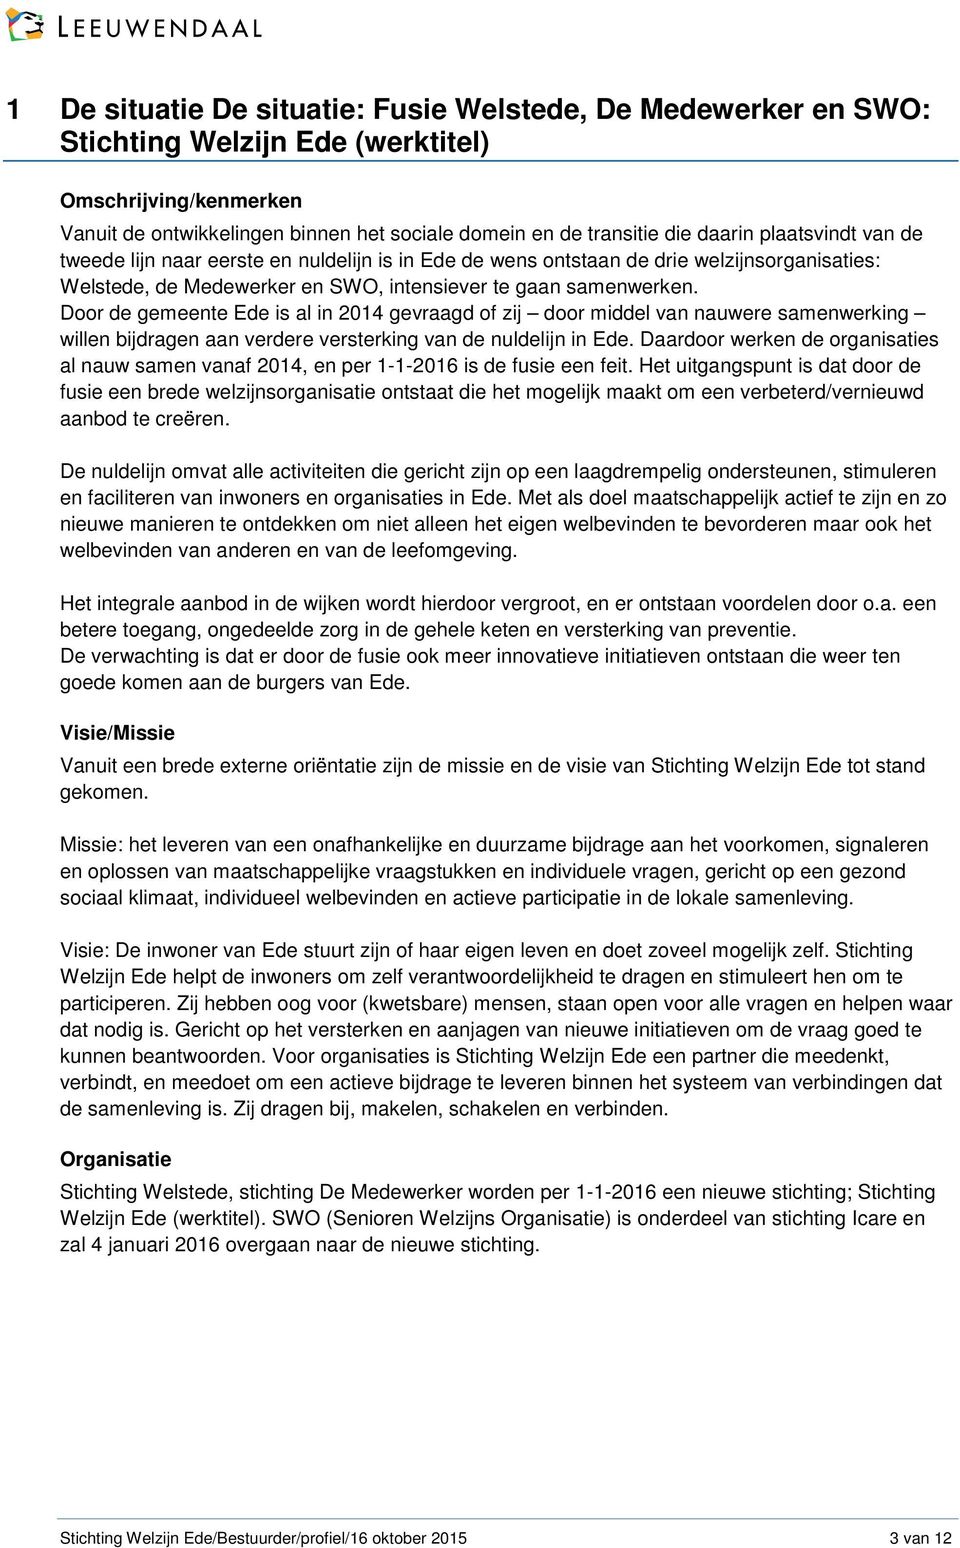 Door de gemeente Ede is al in 2014 gevraagd of zij door middel van nauwere samenwerking willen bijdragen aan verdere versterking van de nuldelijn in Ede.